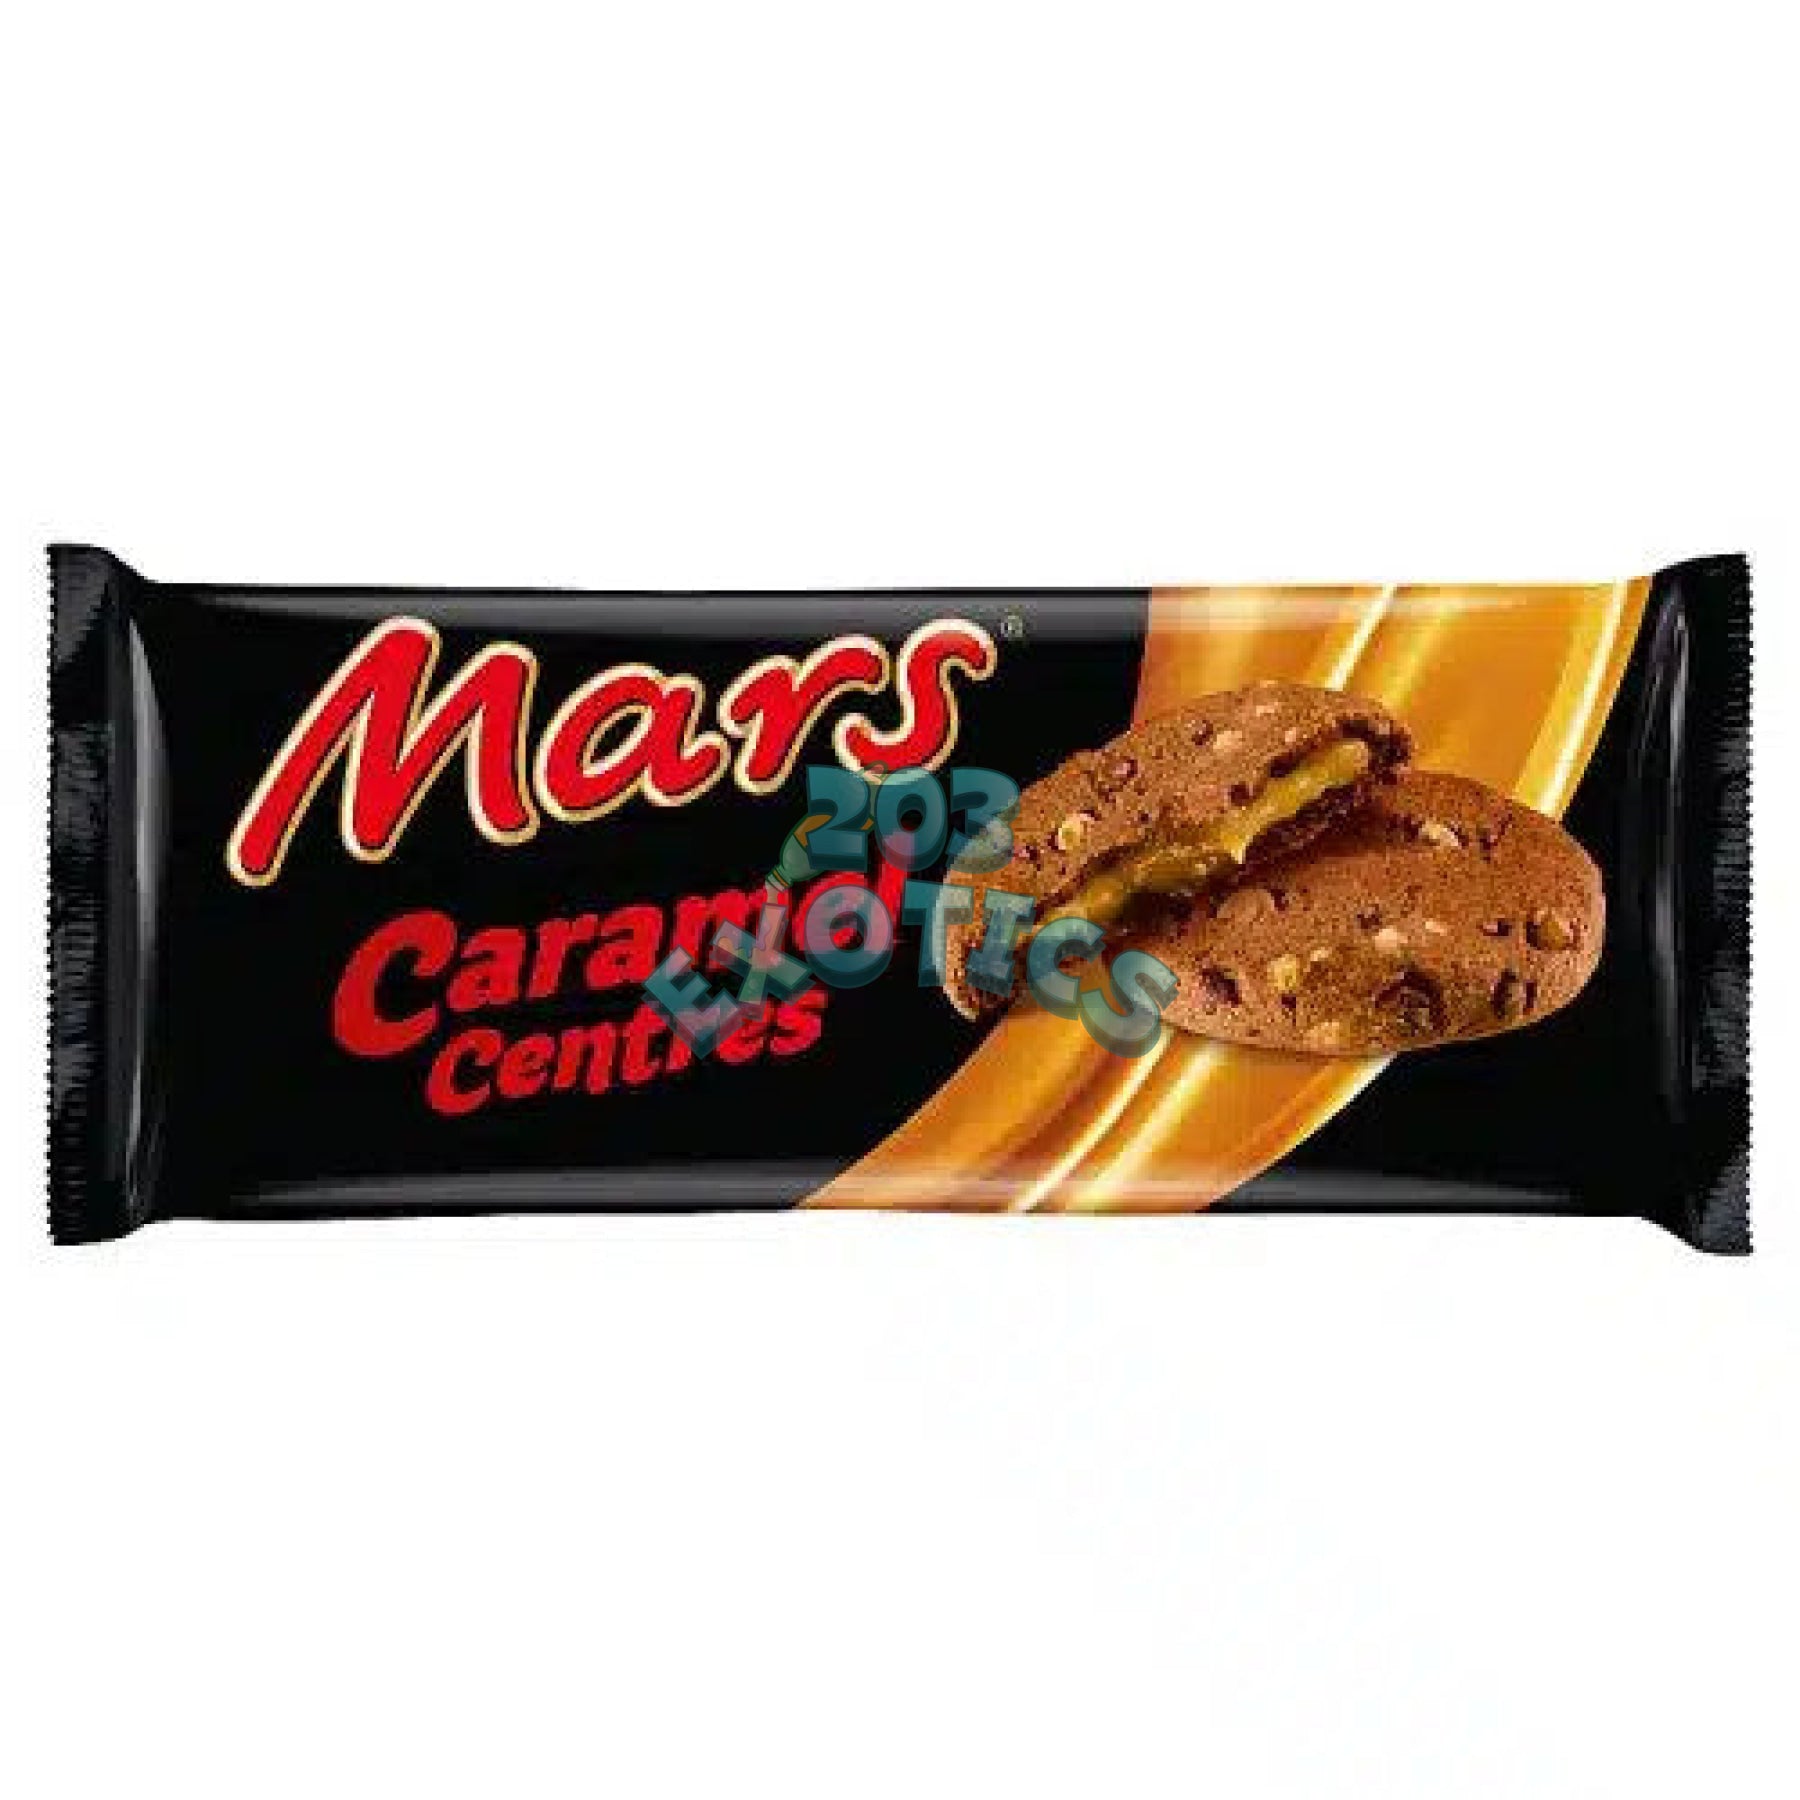 Mars Caramel Centres Cookies (144G)